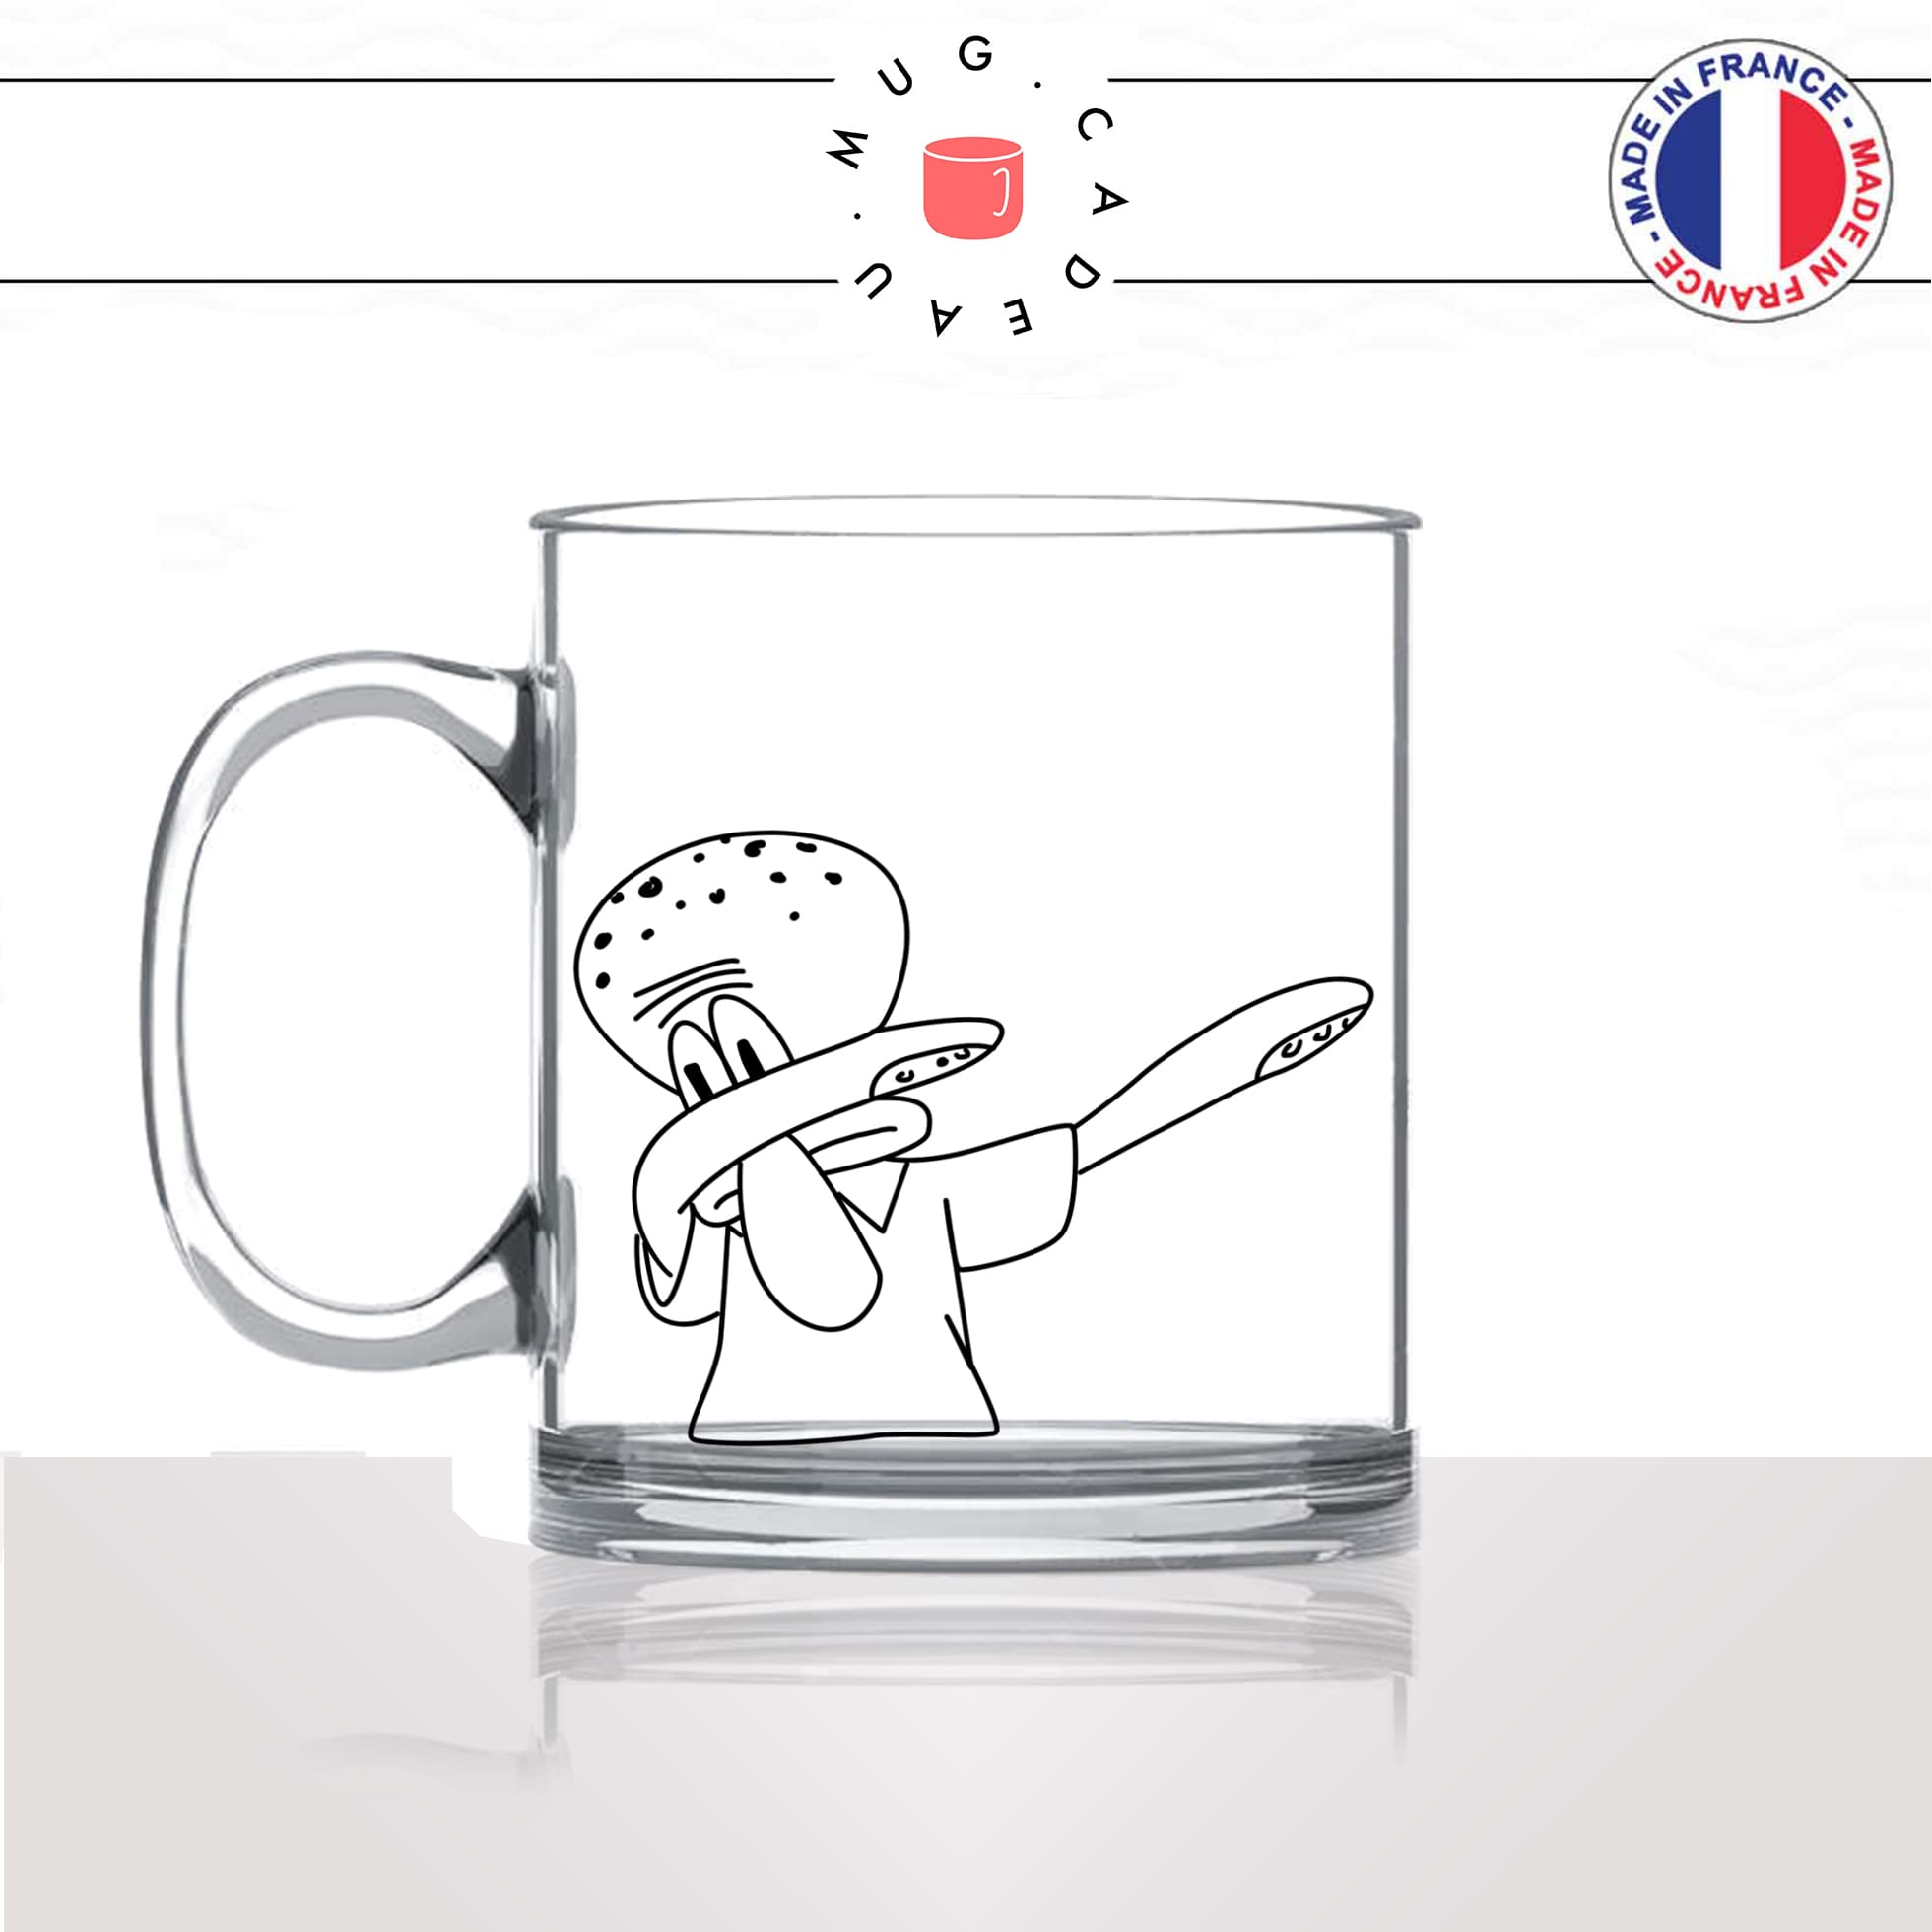 mug-tasse-en-verre-transparent-glass-carlos-dessin-animé-éponge-dhab-dab-danse-mignon-enfant-humour-idée-cadeau-fun-cool-café-thé